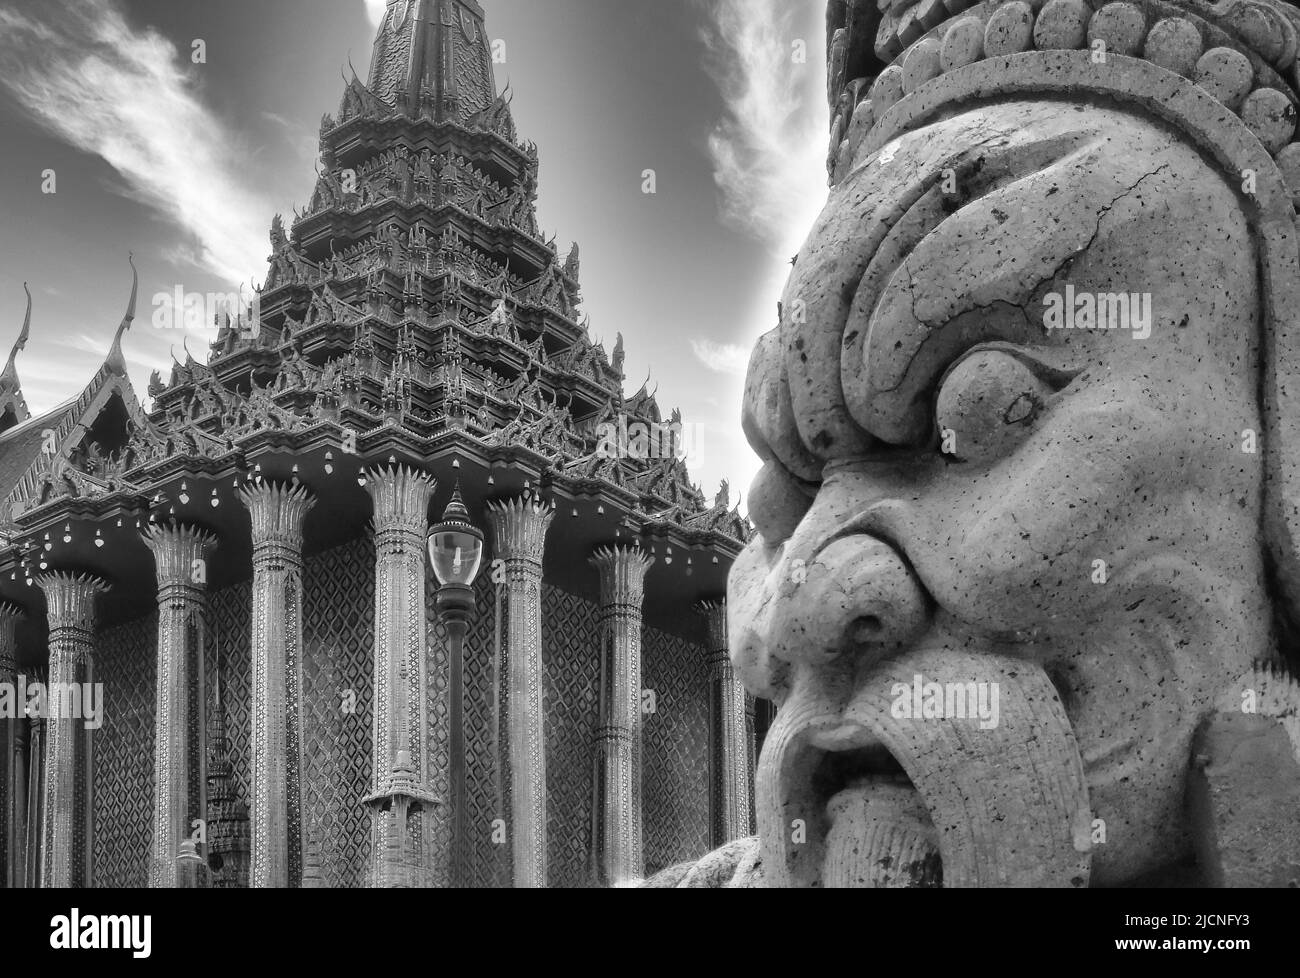 Algunos detalles arquitectónicos del fabuloso templo de Angkor Wat, el símbolo nacional de Camboya, una obra maestra de la civilización jemer Foto de stock